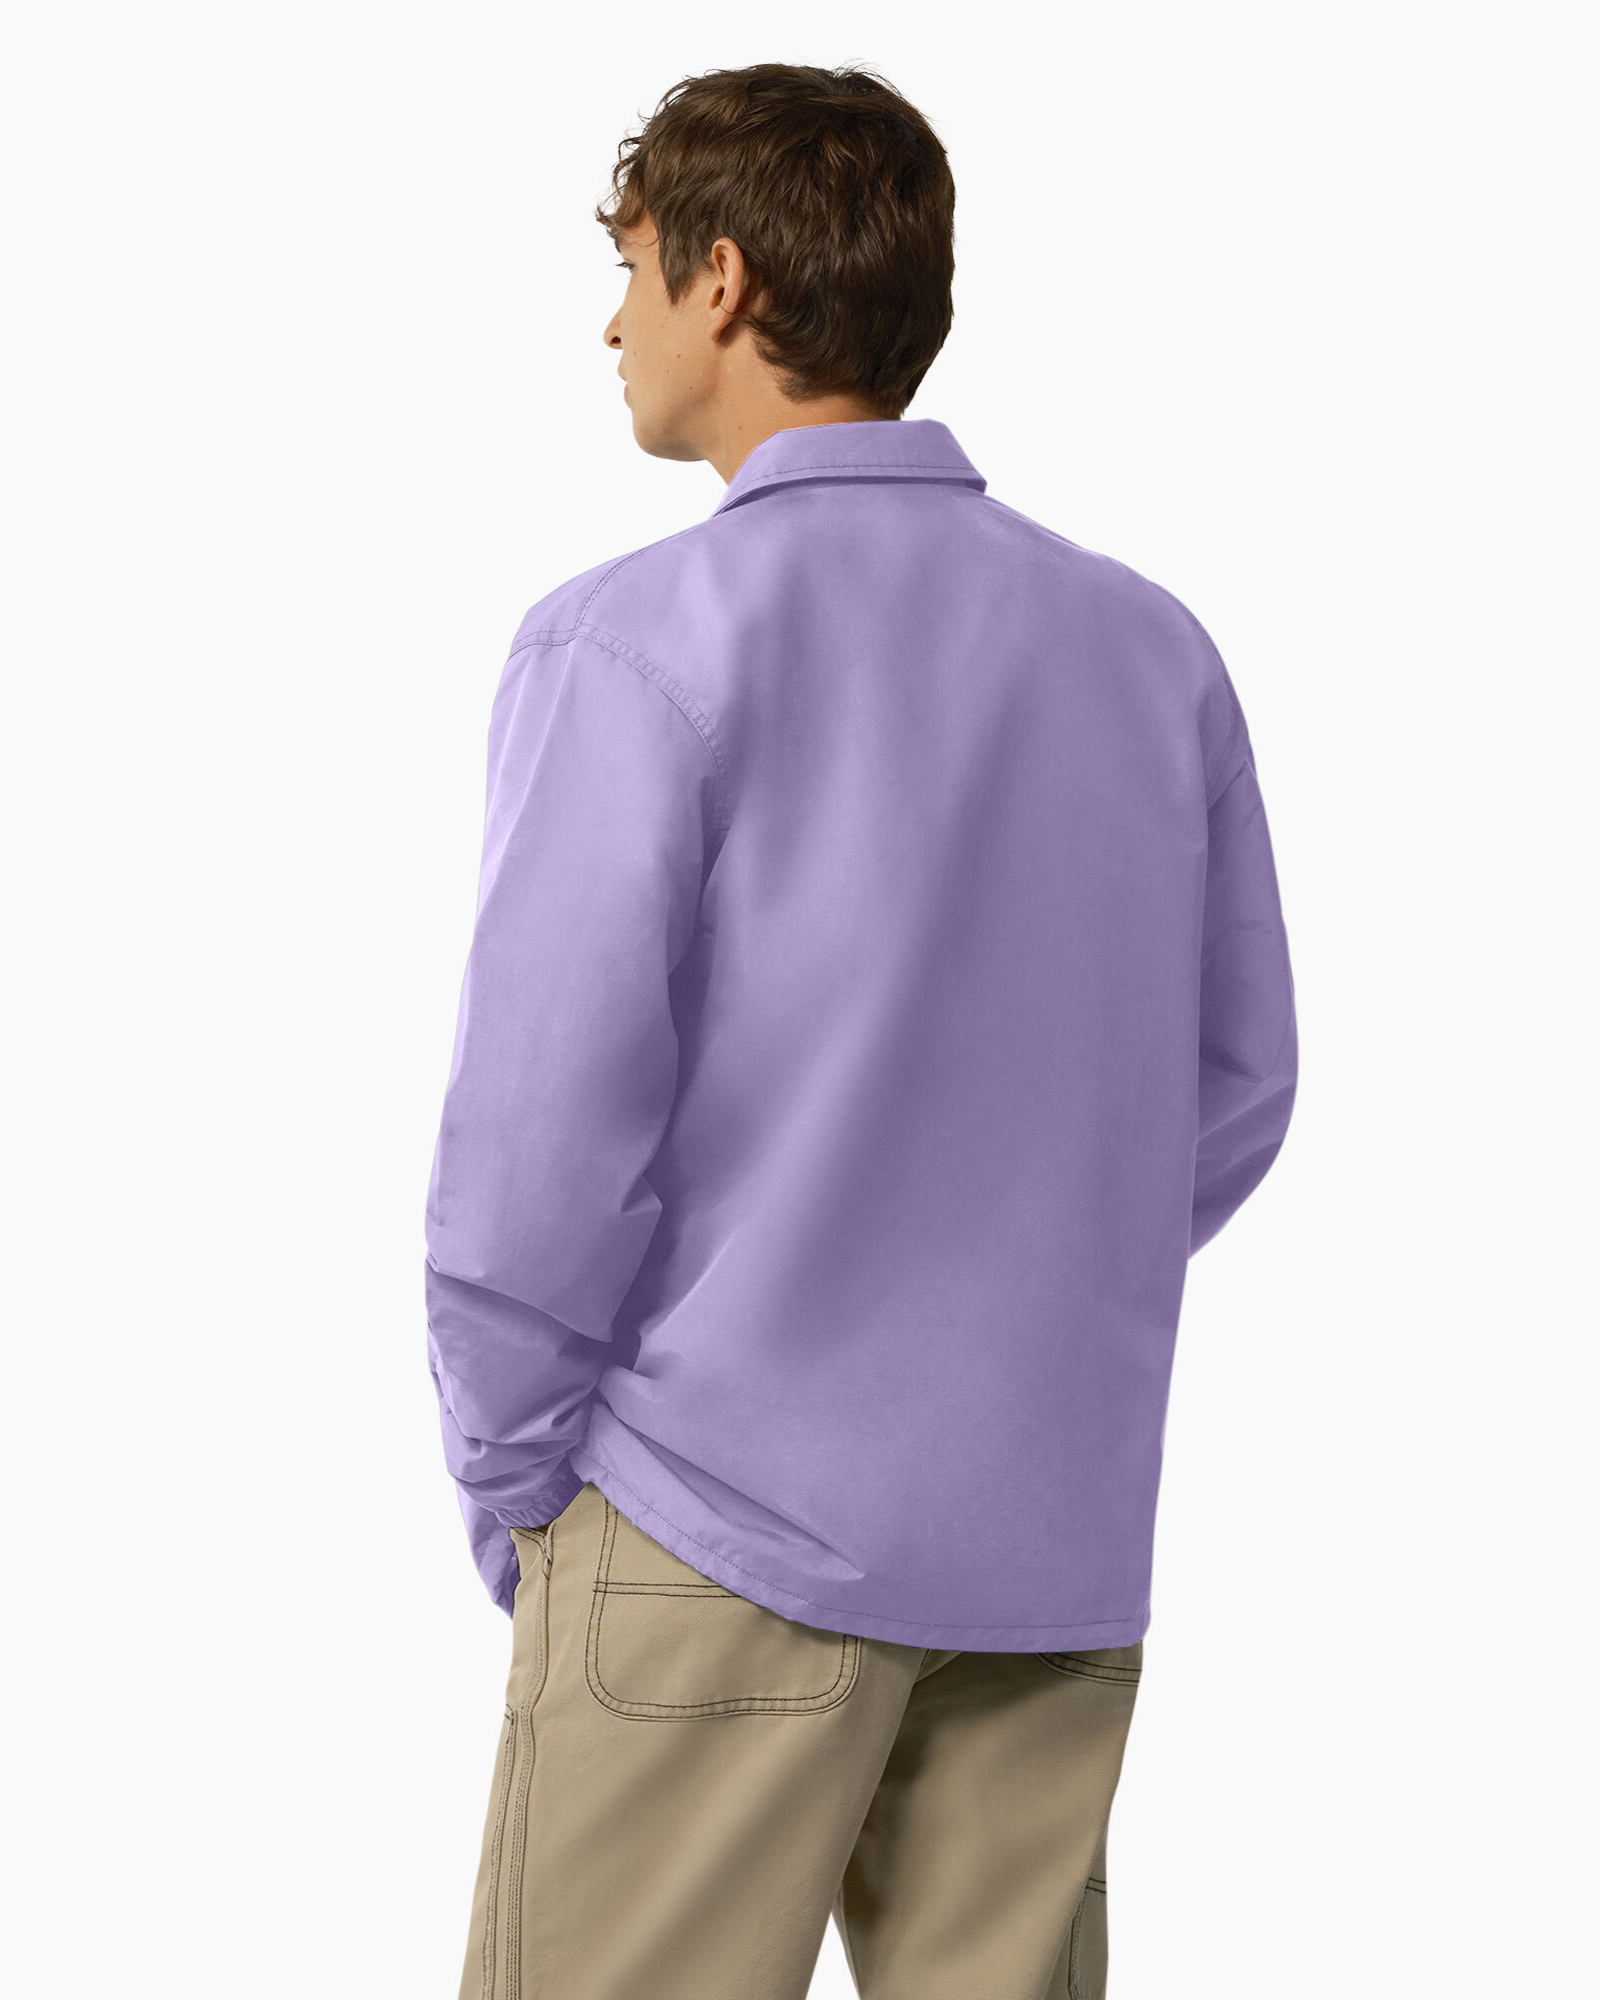 Dickies Purple Jacket